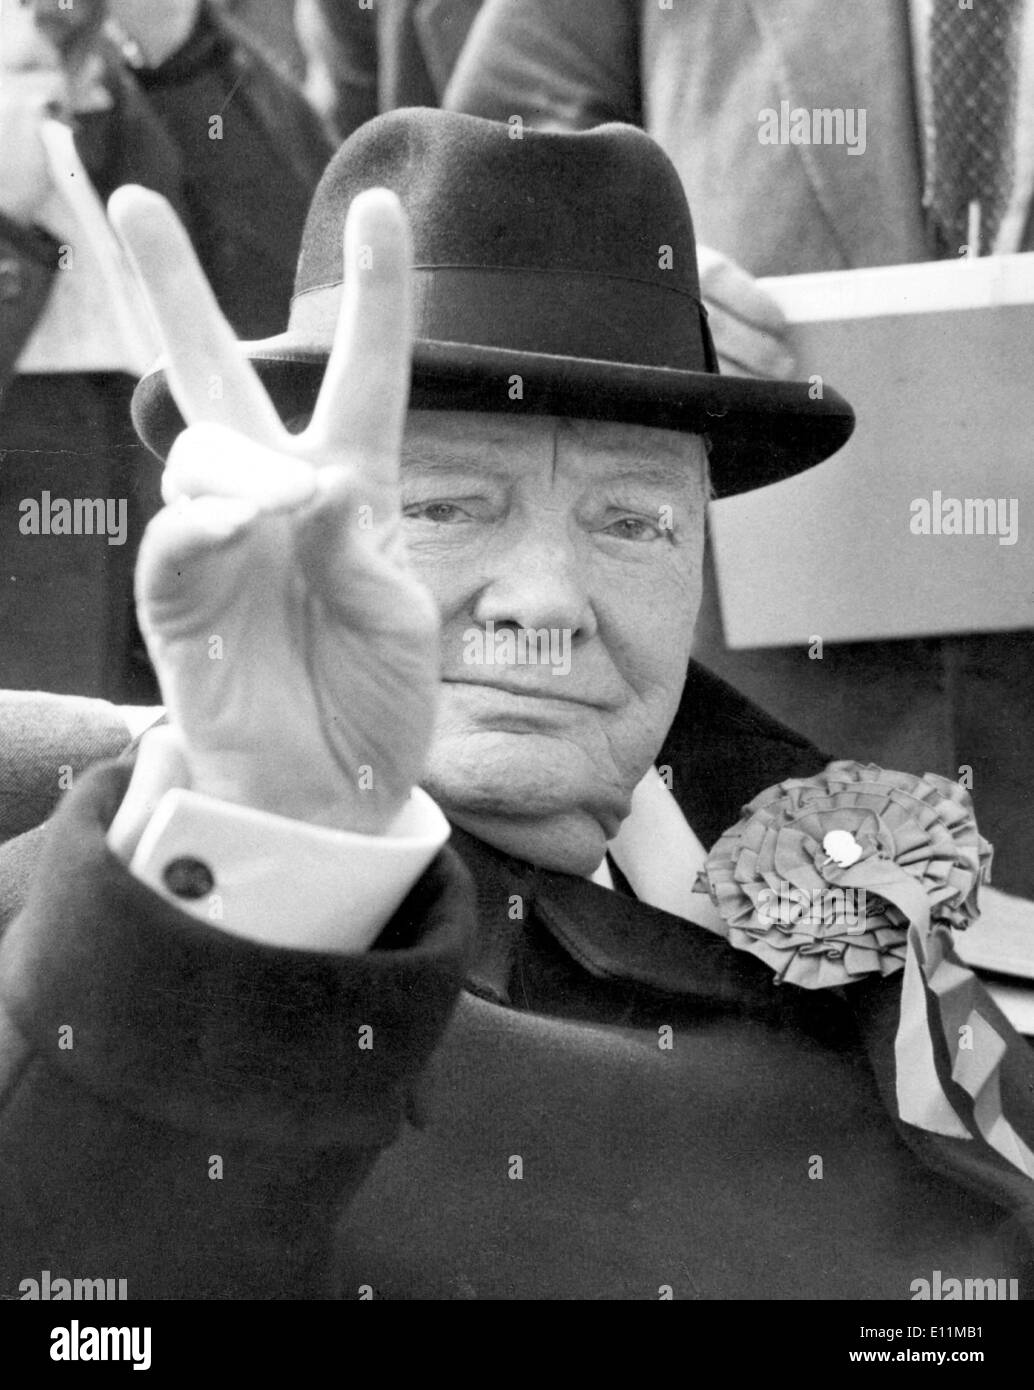 5207207 (900324) Sir Winston CHURCHILL, Britischer Politiker, (30.11.1874 - 24.01.1965), Porträt von 1959 Mit Dem Sieg - Stockfoto